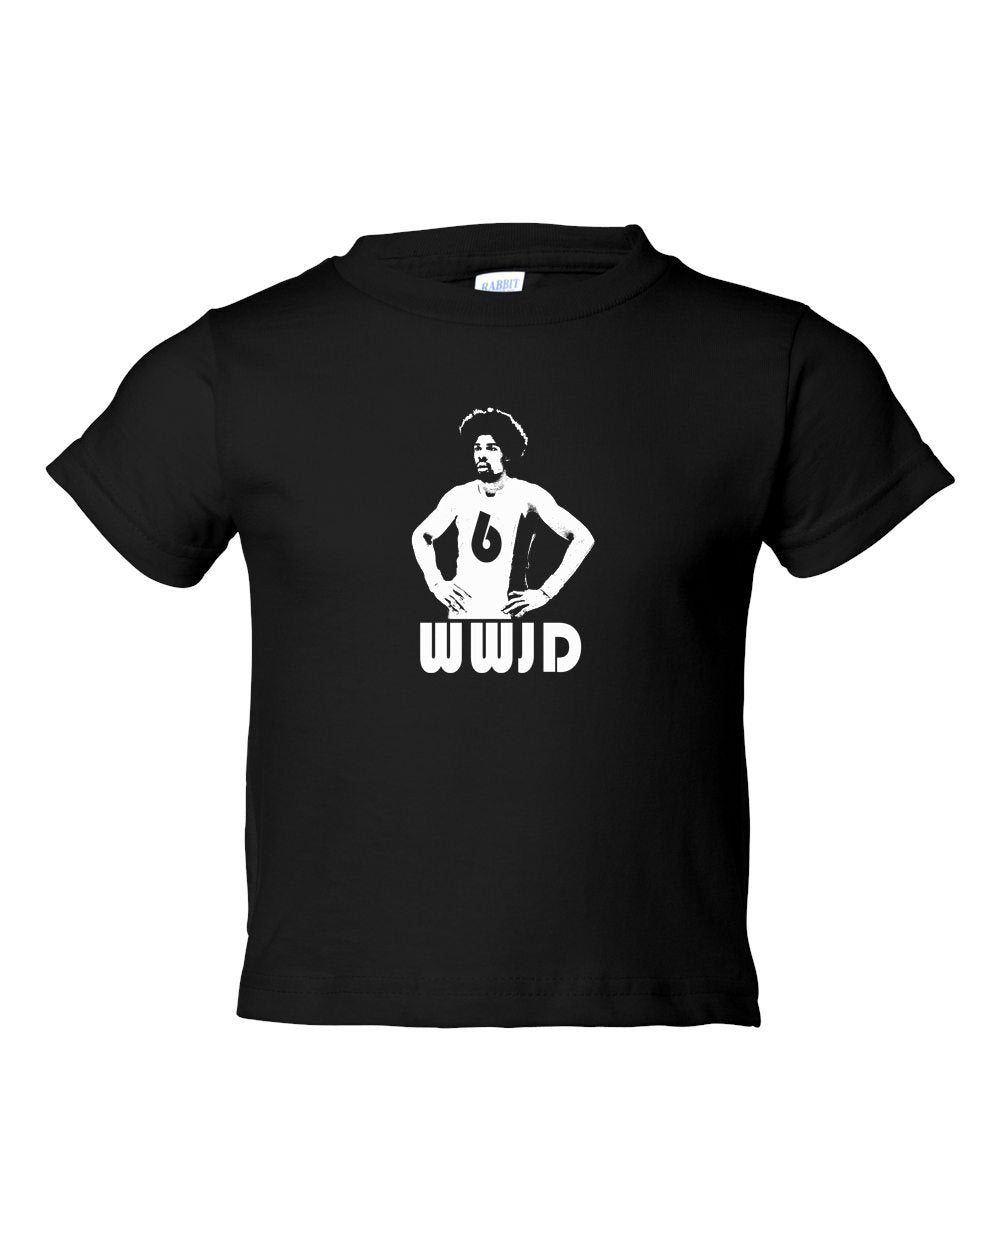 WWJD TODDLER T-Shirt